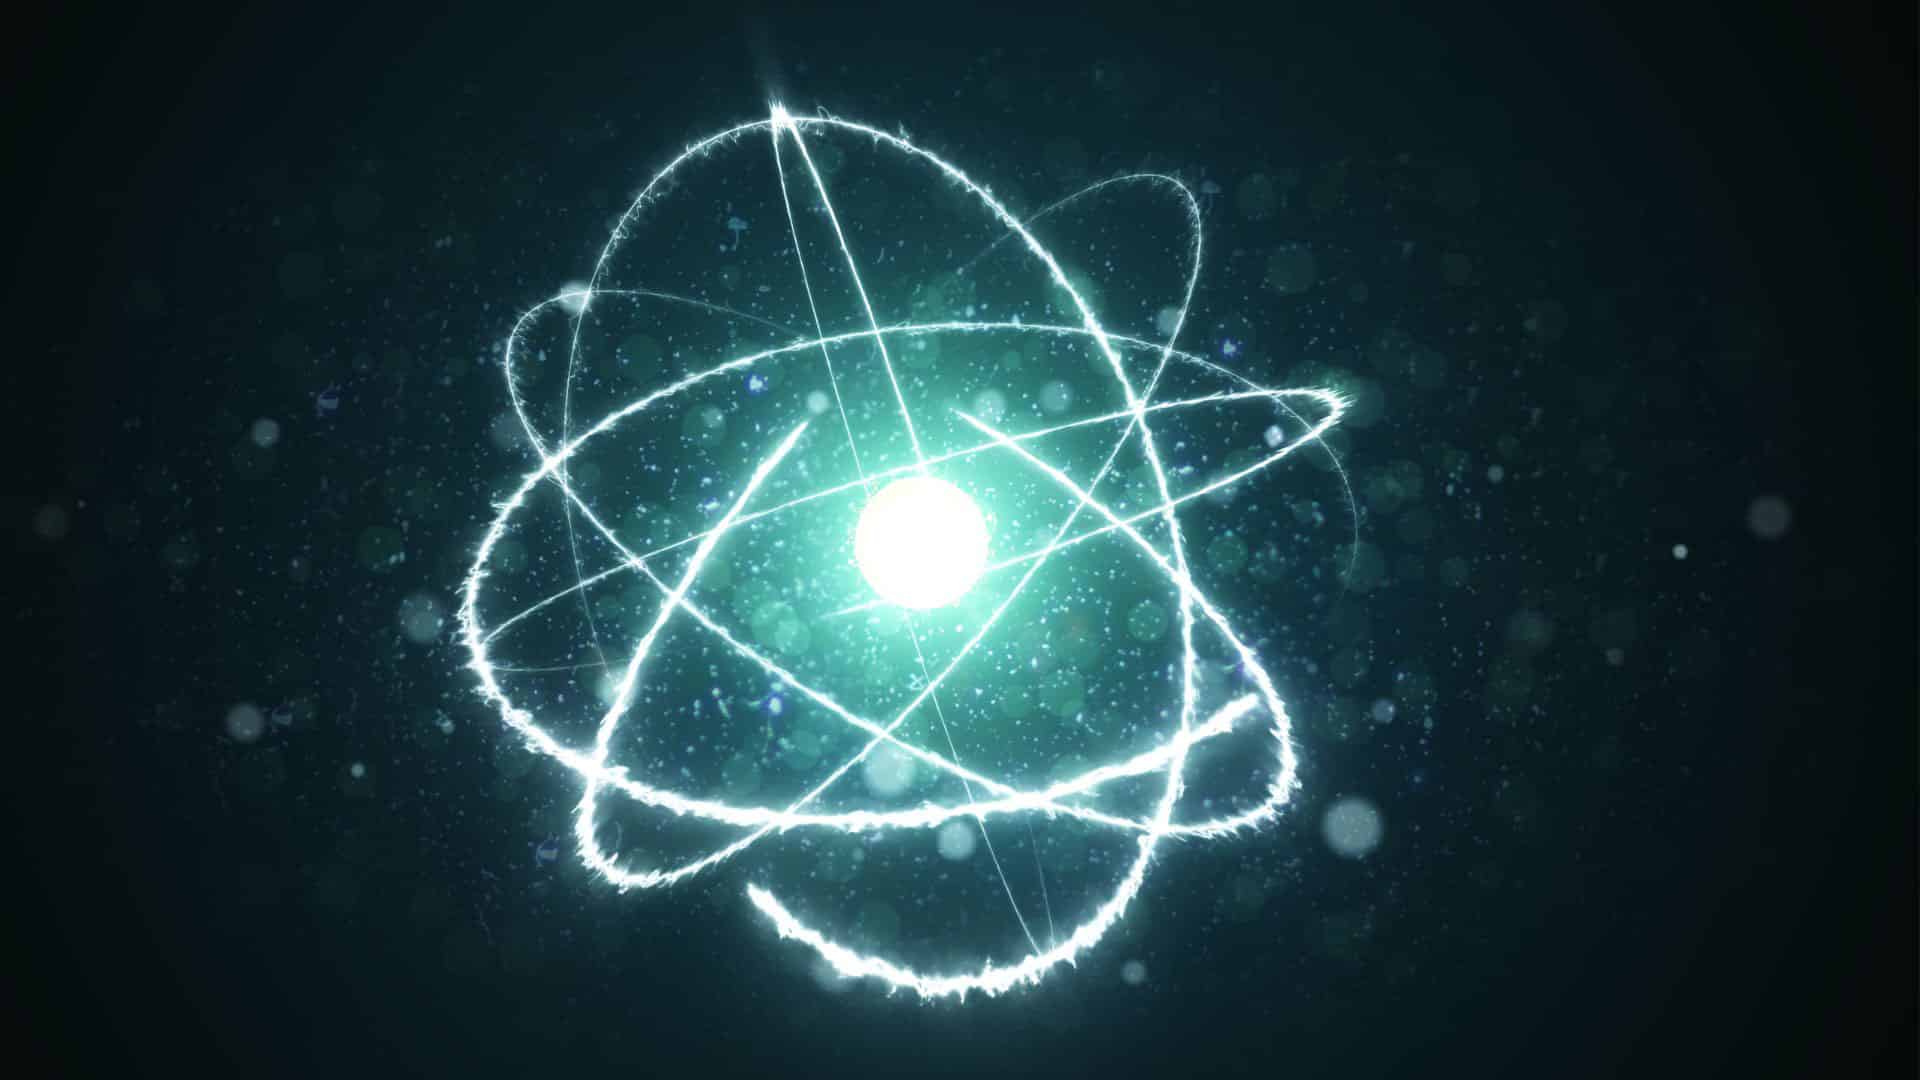 Image showing atomic nuclei